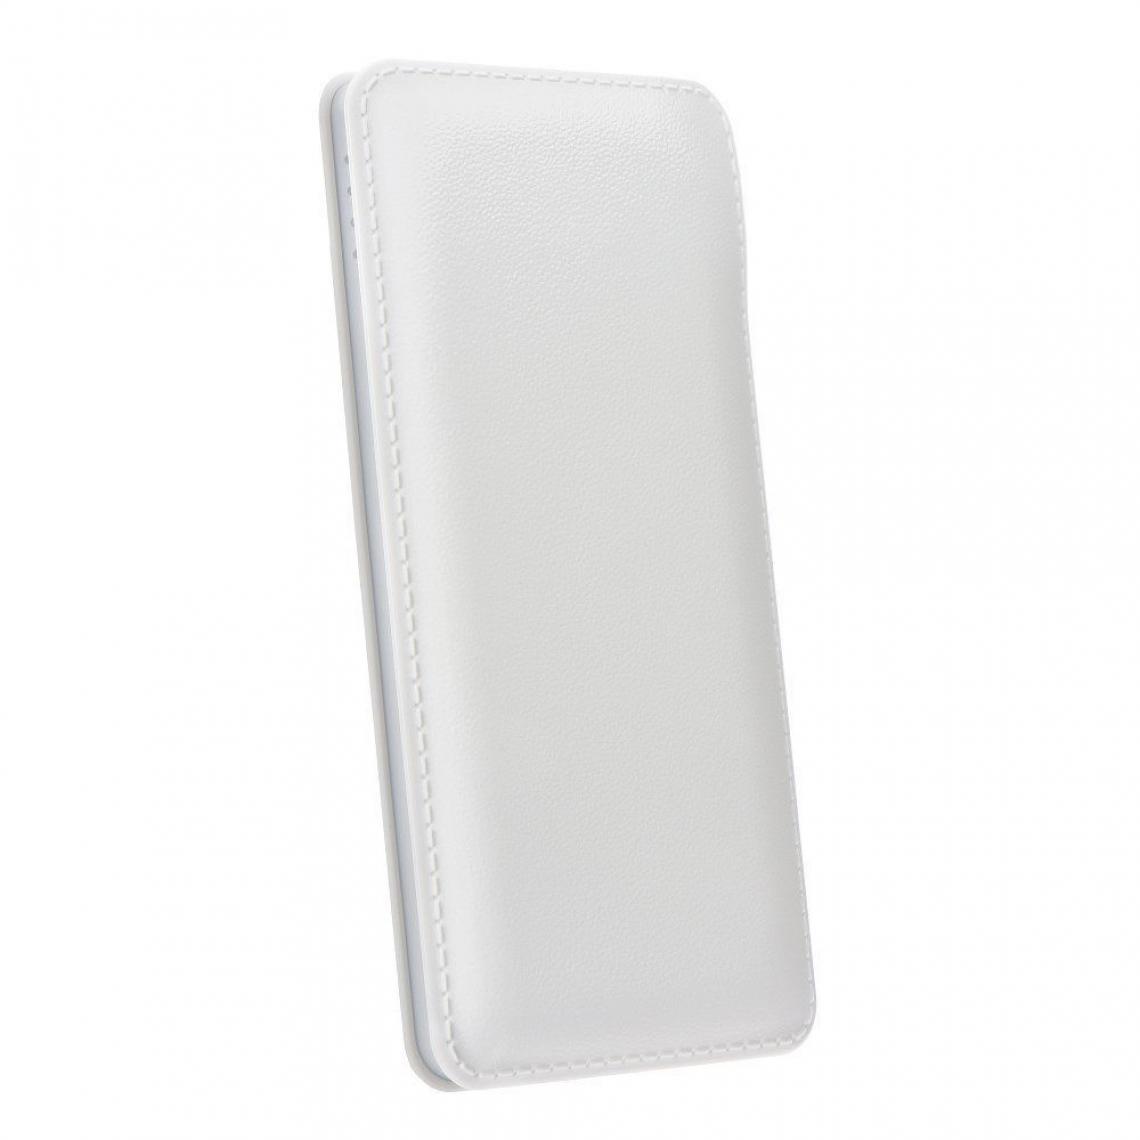 Ozzzo - Chargeur batterie externe 20000 mAh powerbank ozzzo blanc pour Samsung Galaxy S10e - Autres accessoires smartphone